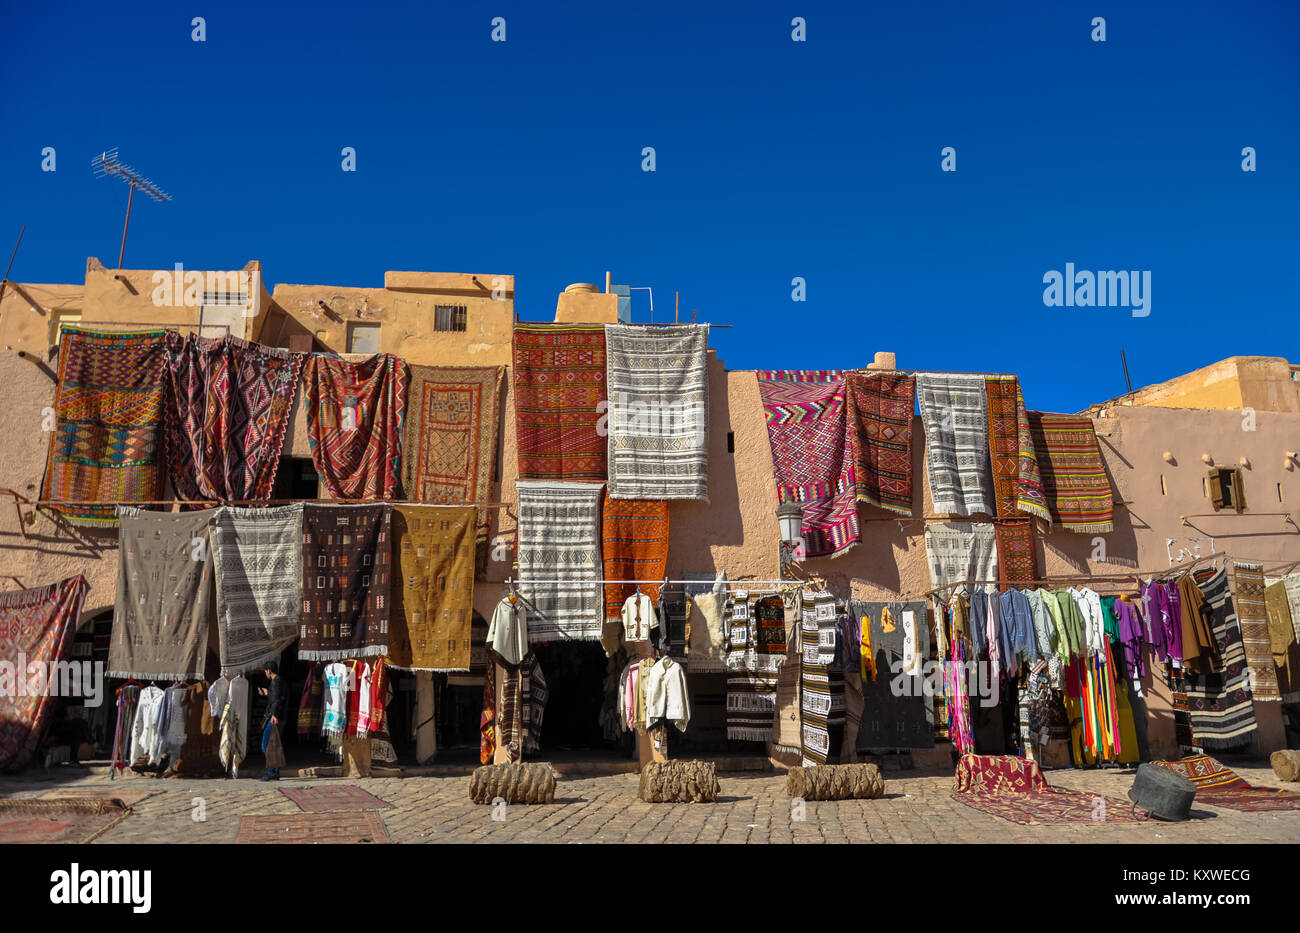 Une photo du marché de l'artisanat à Ghardaia - Algérie. Tapis de laine faits main traditionnelle et géométriques traditionnels de la sculpture. Banque D'Images